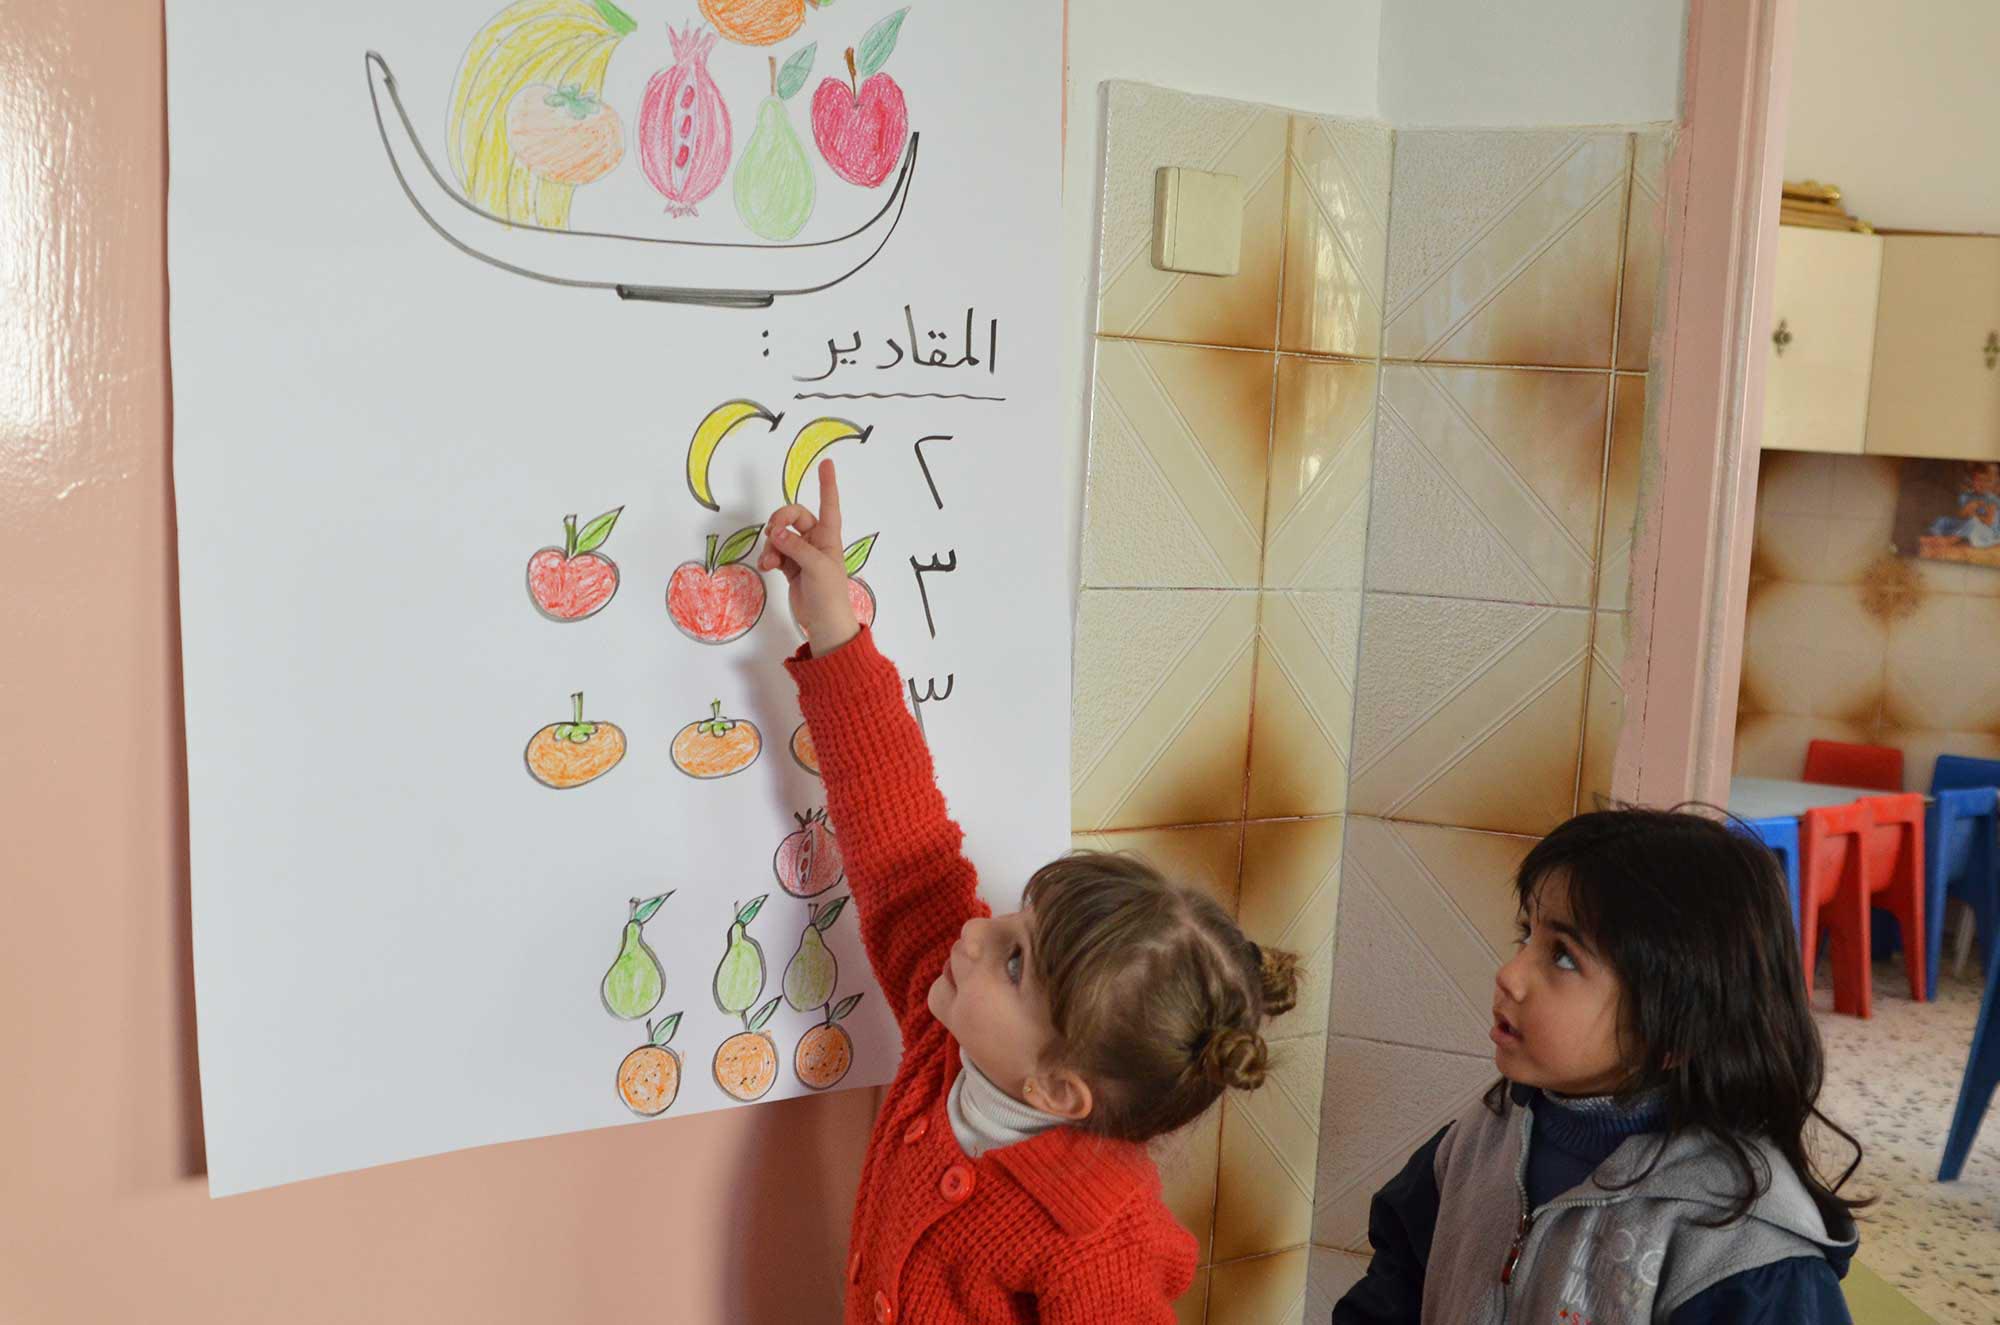 Children use a fruit salad recipe to learn scientific concepts in Gaza preschools.